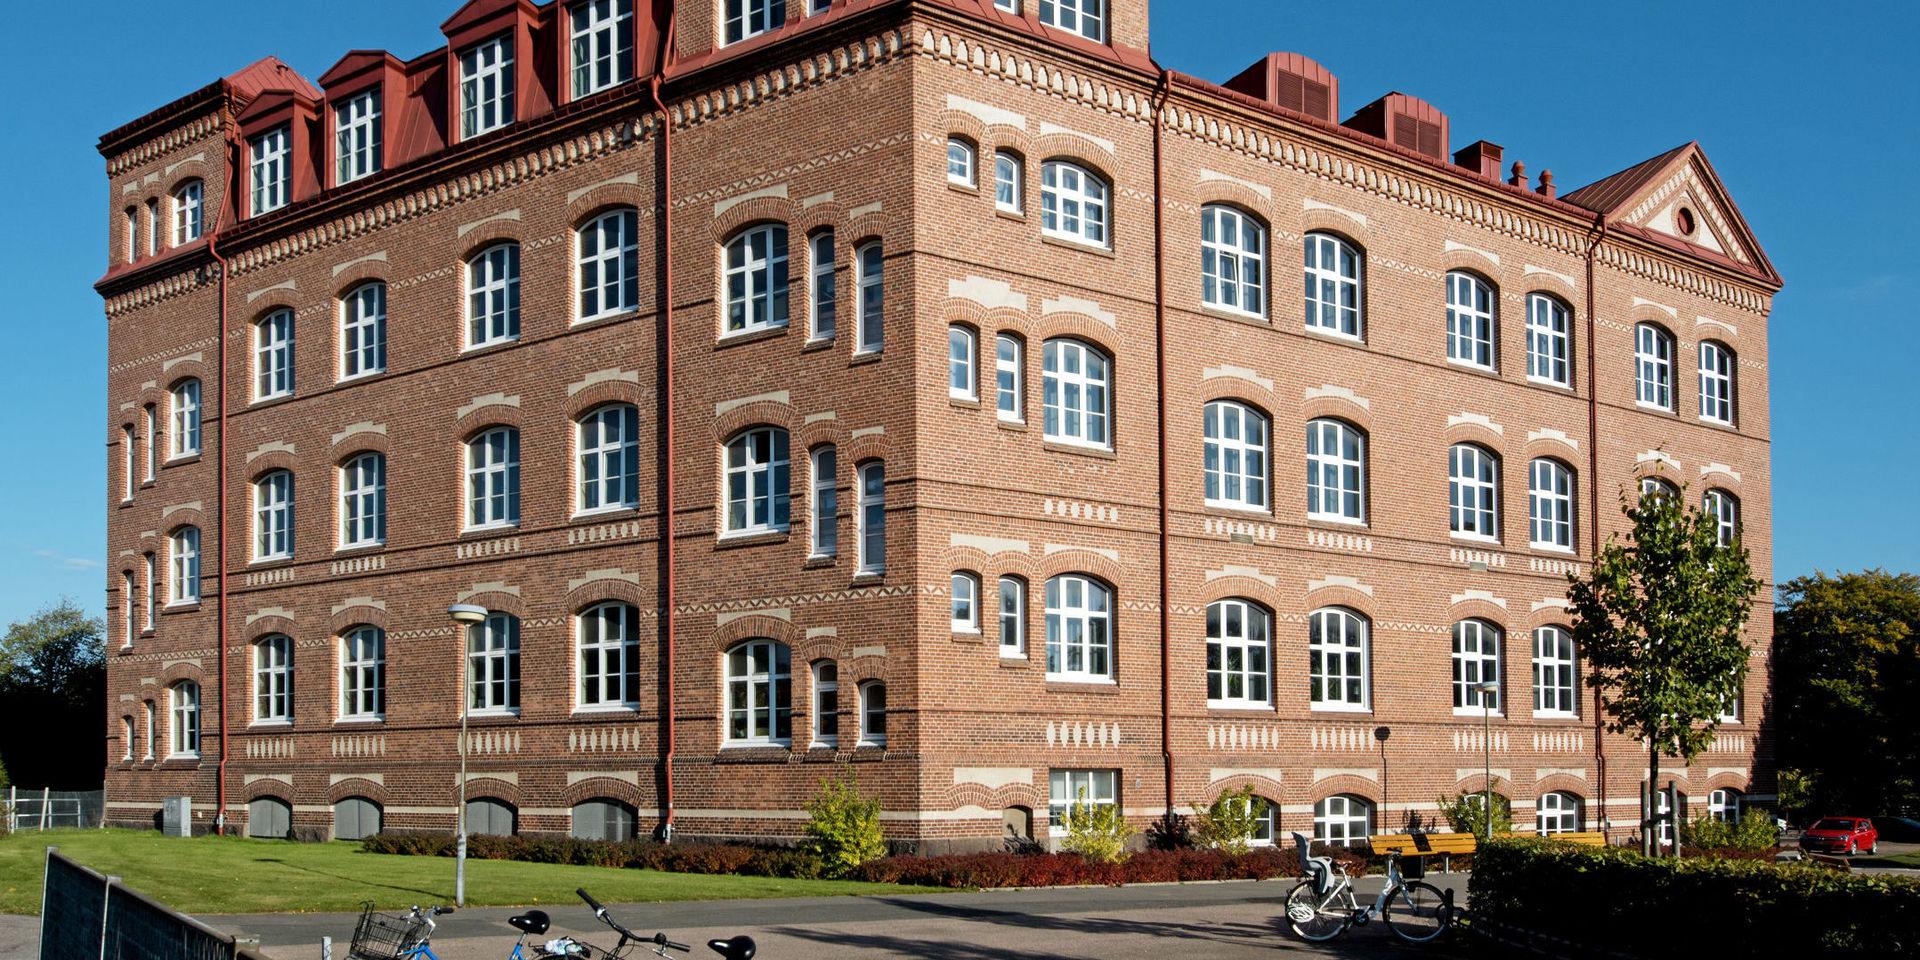 Brunnsåkersskolan